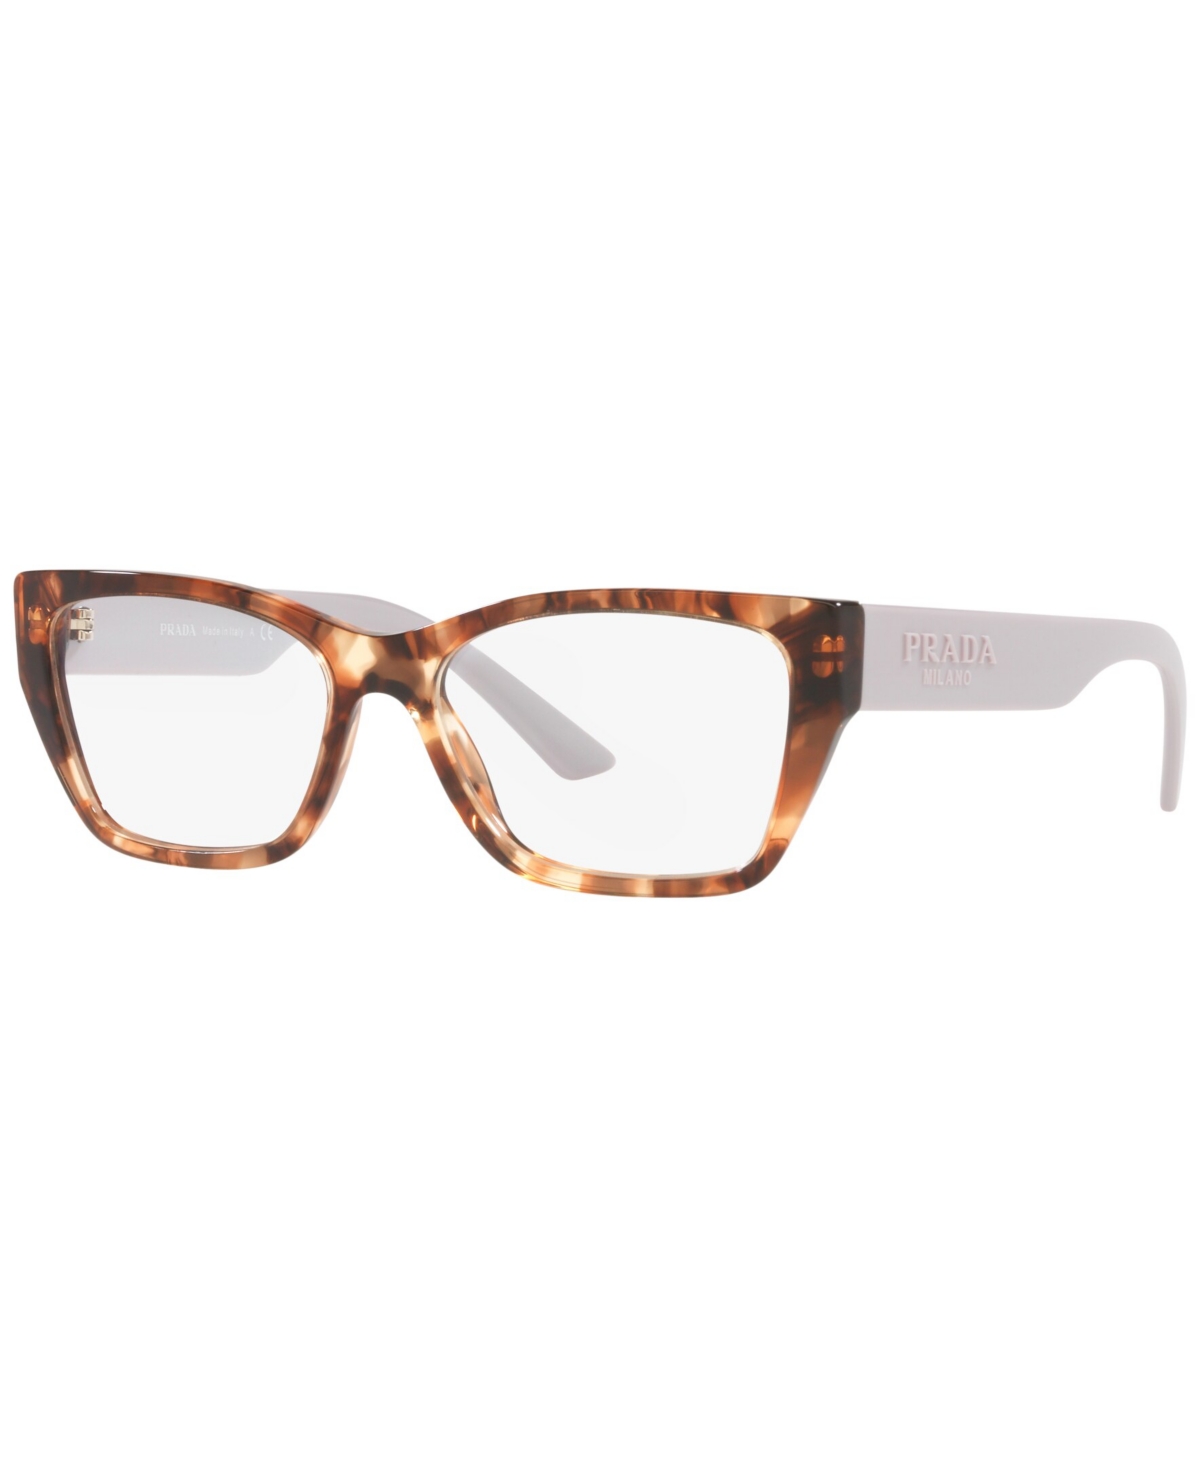 PR11YV Women's Irregular Eyeglasses - Caramel Tortoise